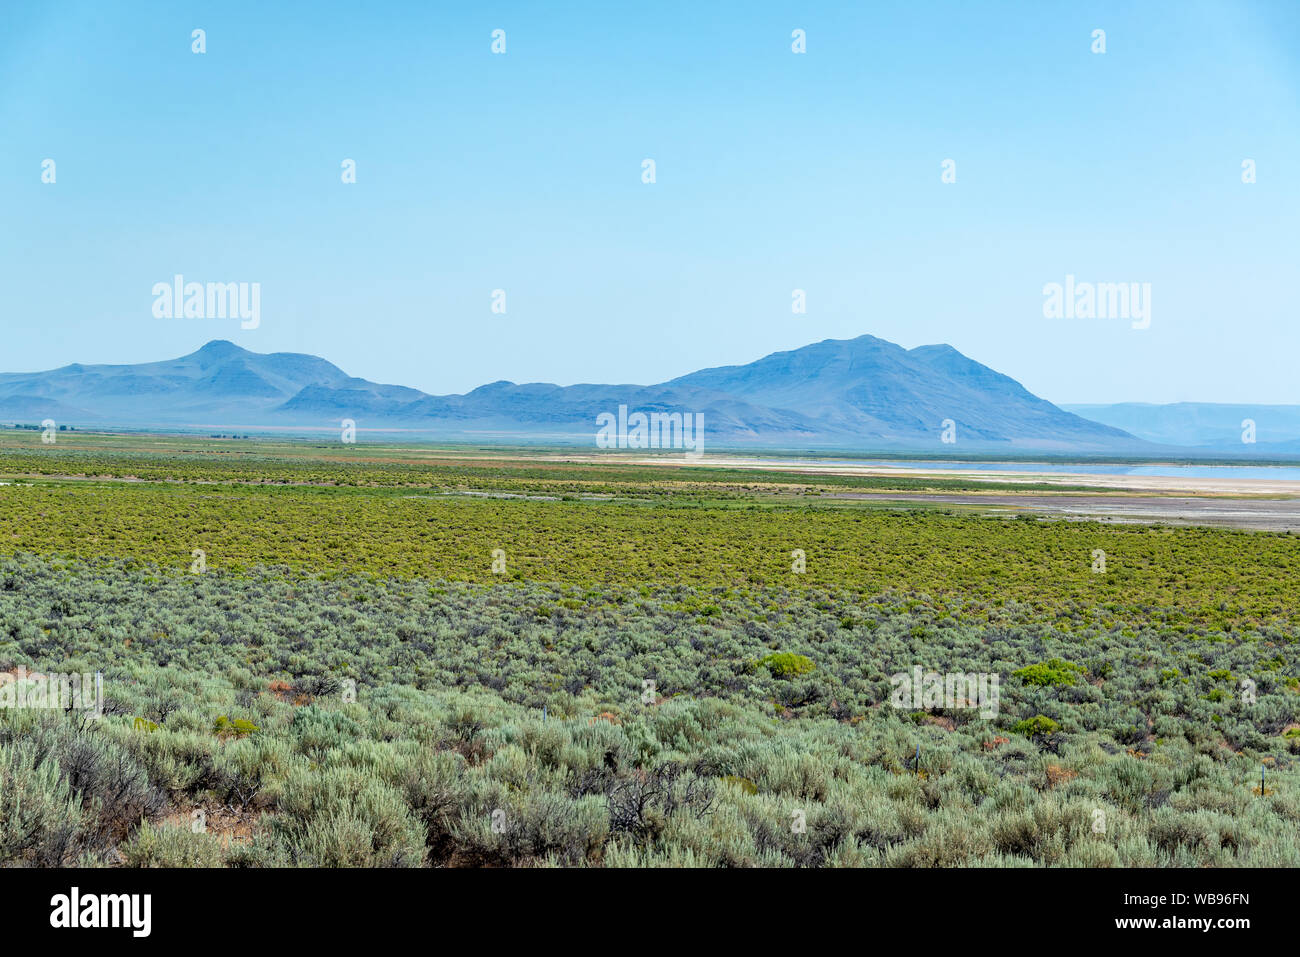 Magnifique paysage de l'Alvord Desert dans le sud-est de l'Oregon Banque D'Images